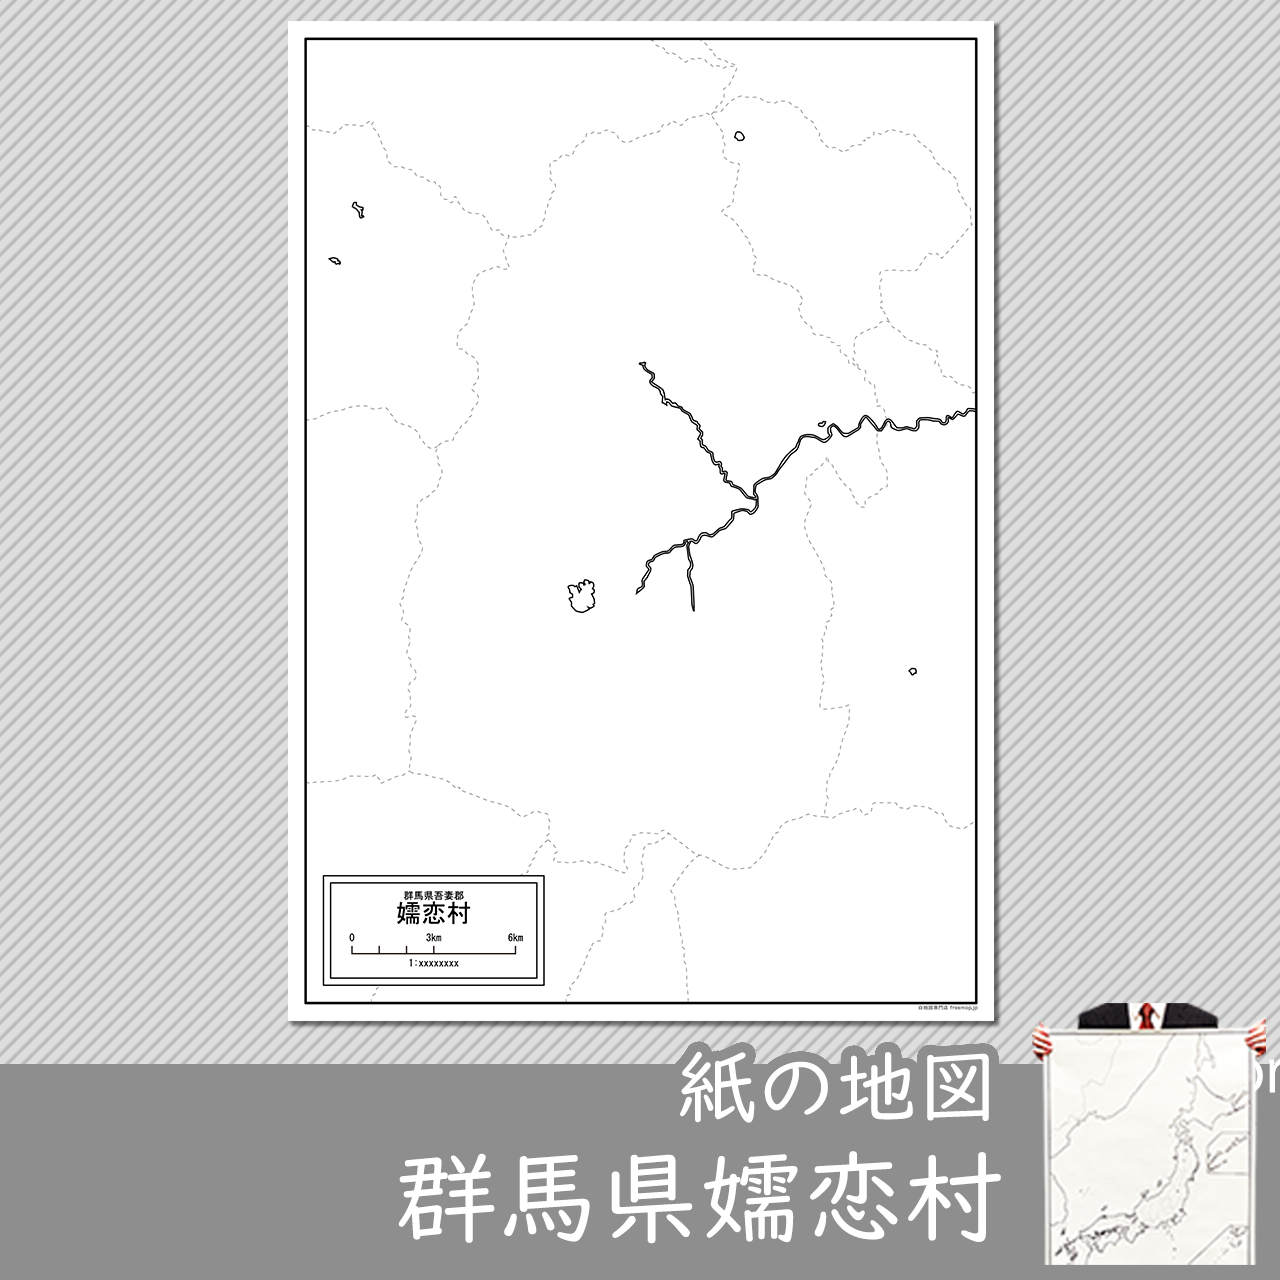 嬬恋村の紙の白地図のサムネイル